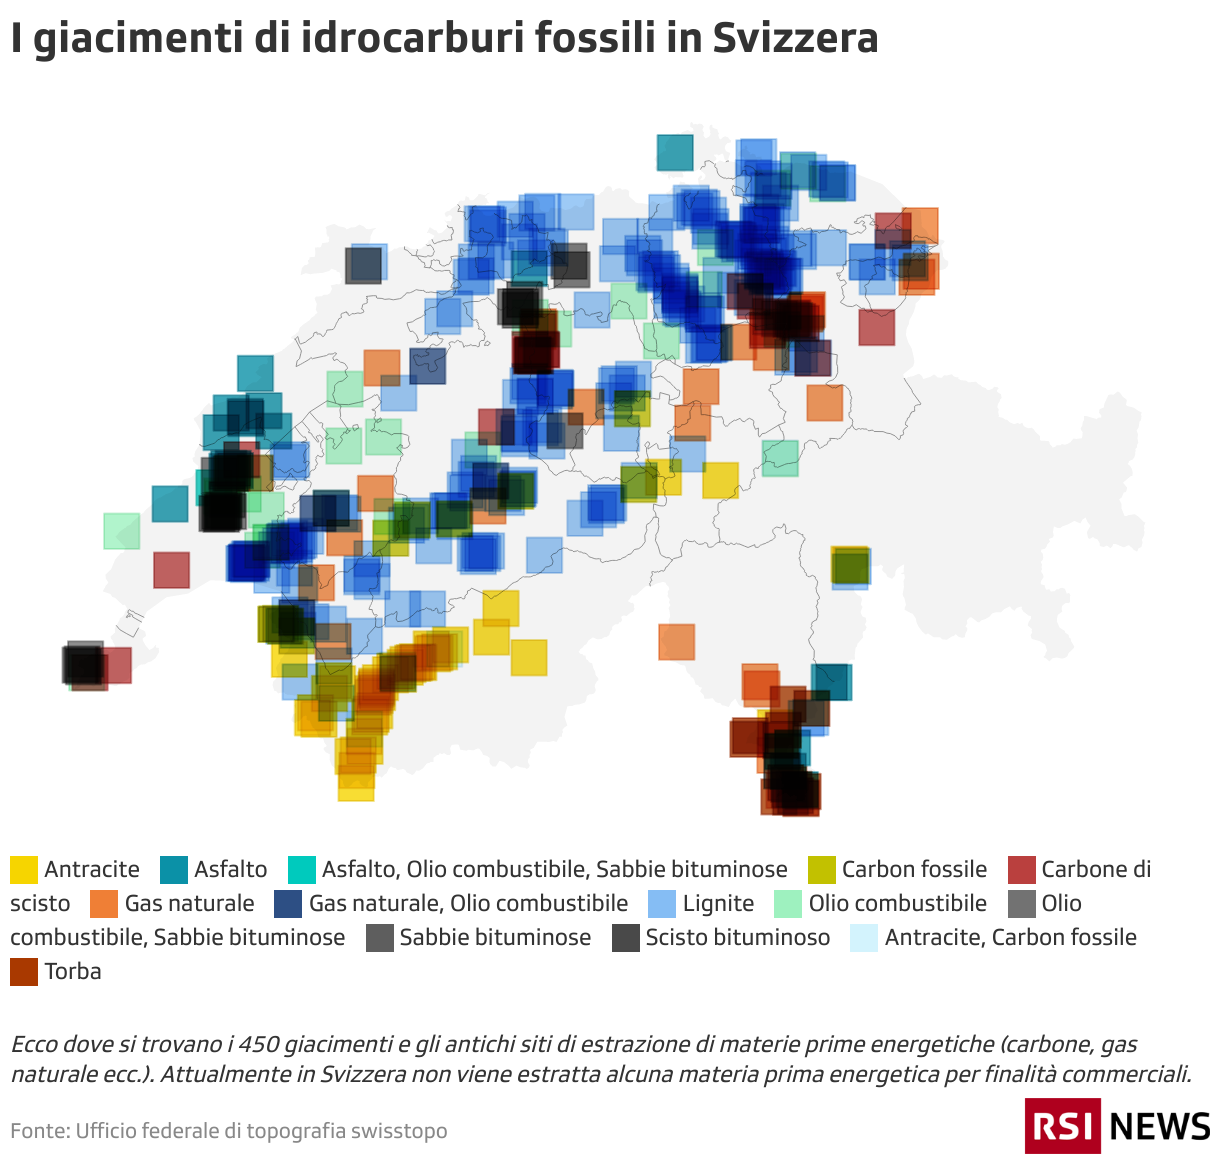 La cartina della Svizzera con i giacimenti